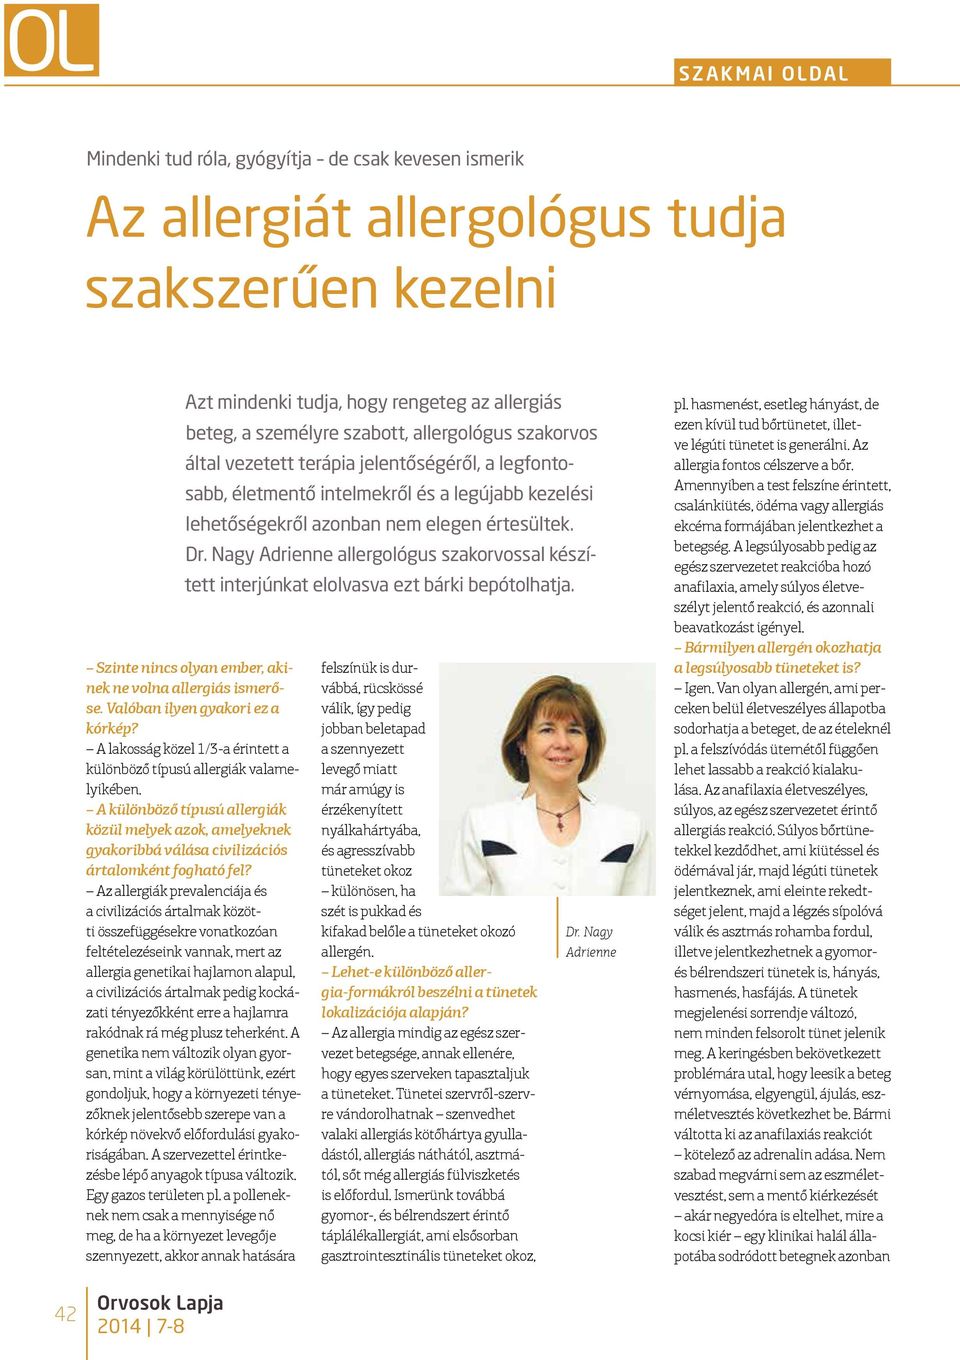 Nagy Adrienne allergológus szakorvossal készített interjúnkat elolvasva ezt bárki bepótolhatja. Szinte nincs olyan ember, akinek ne volna allergiás ismerőse. Valóban ilyen gyakori ez a kórkép?